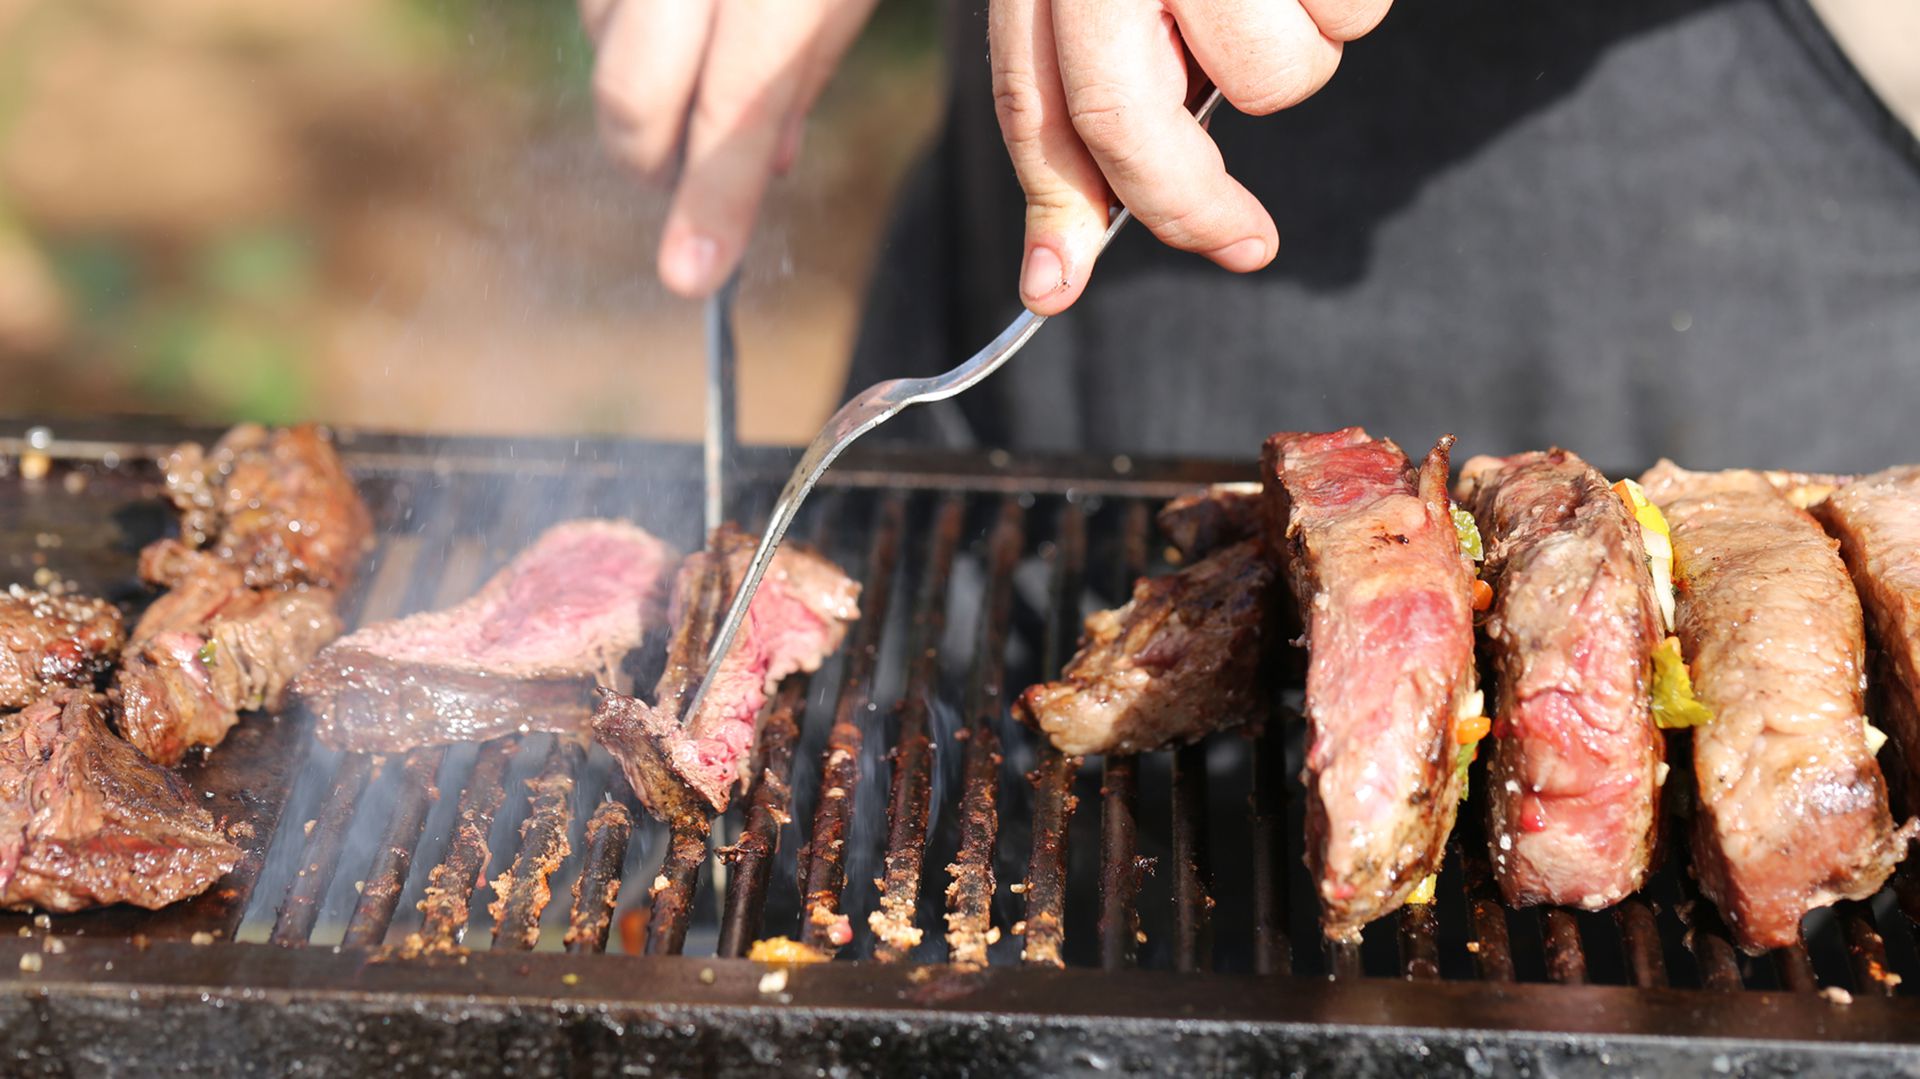 La carne asada puede provocar efectos negativos en la salud (Foto: Isrock)